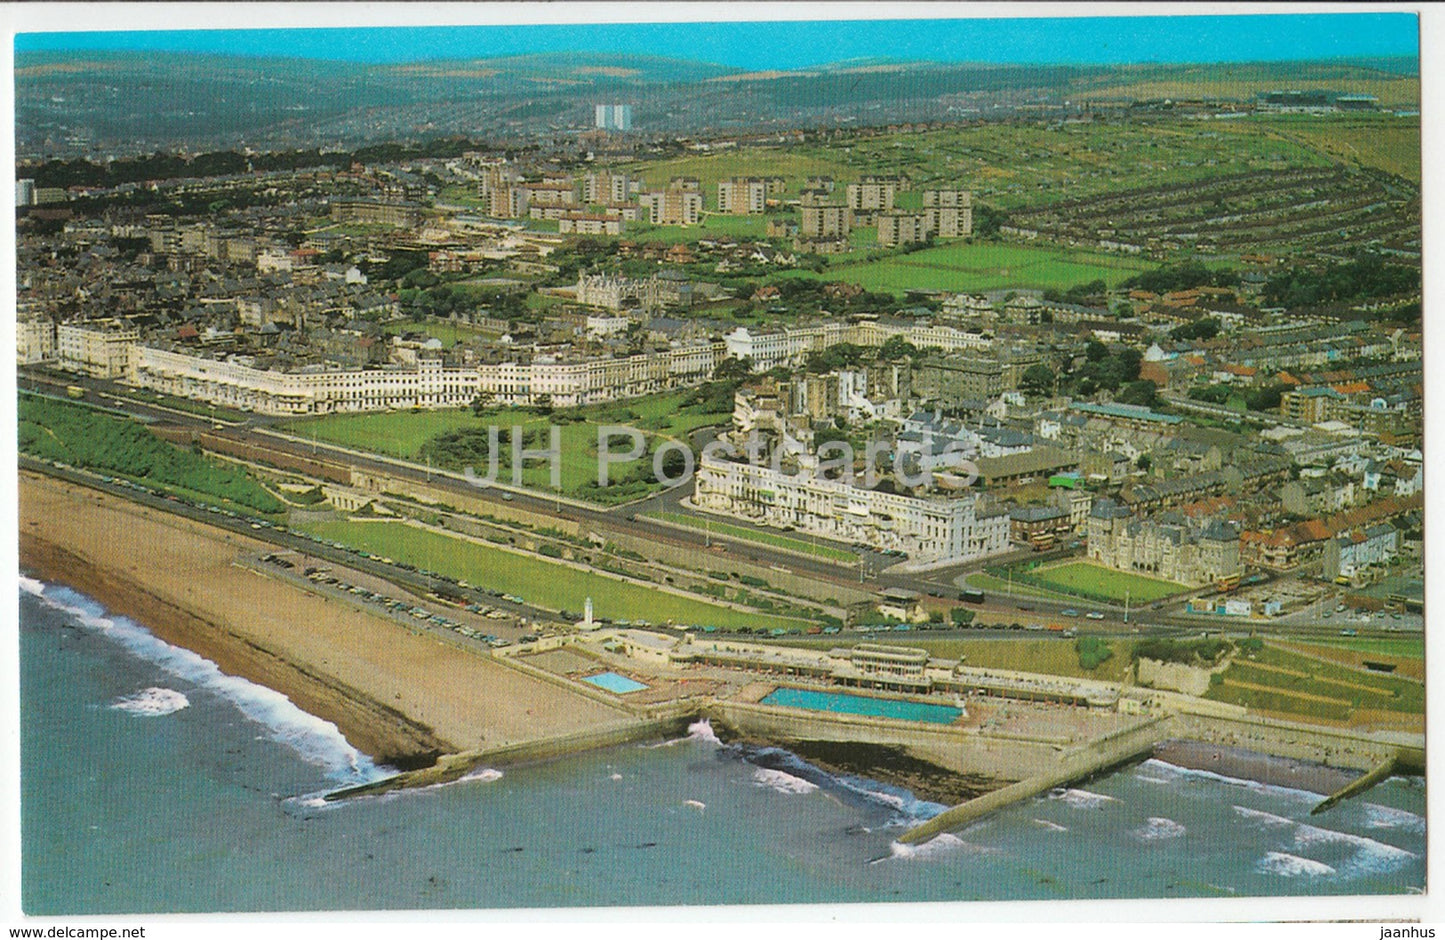 Brighton - aerial view - PT3578 - United Kingdom - England - unused - JH Postcards